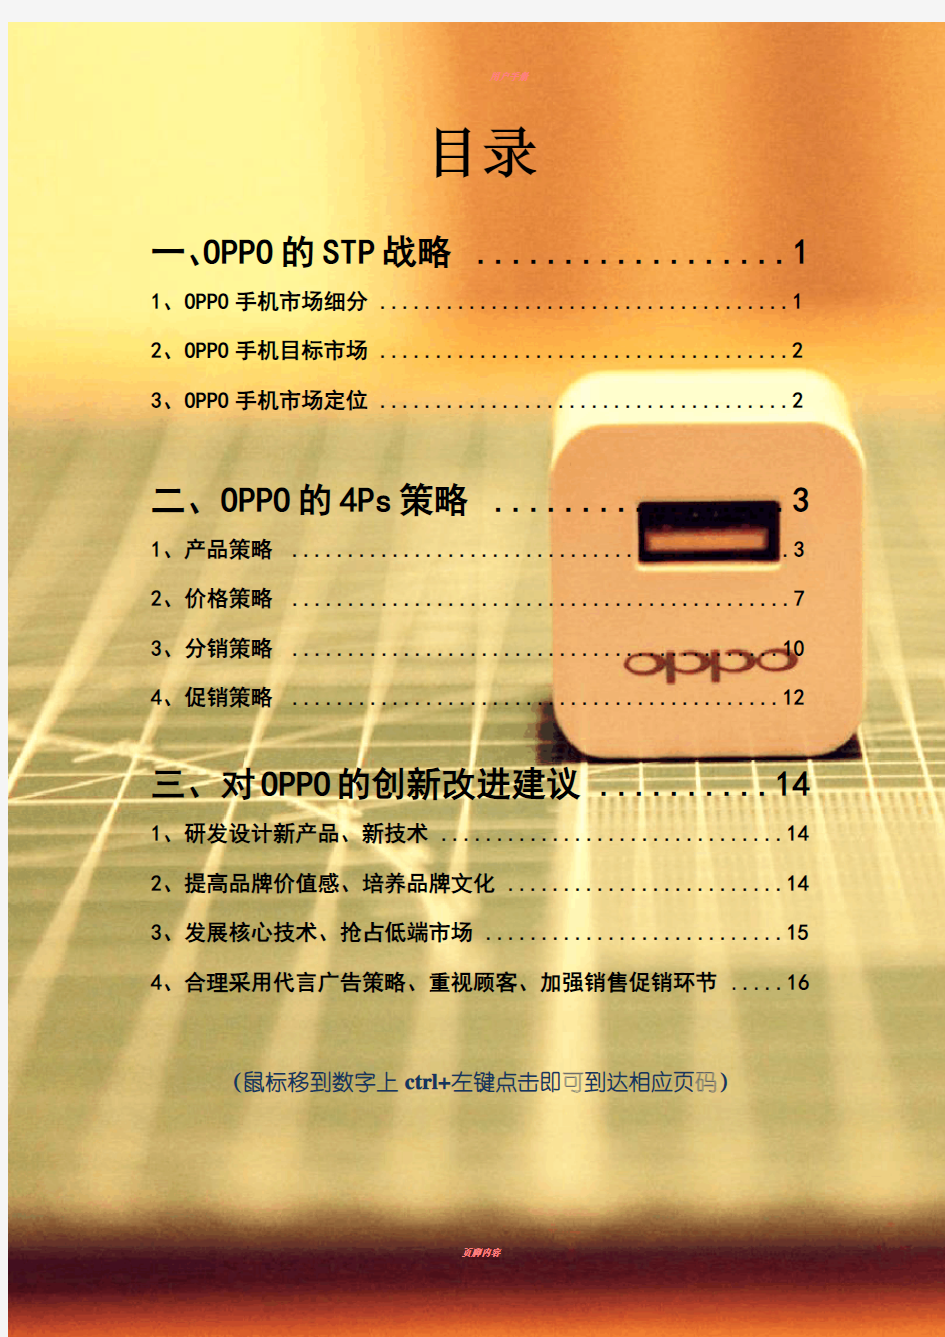 OPPO市场营销stp和4ps分析